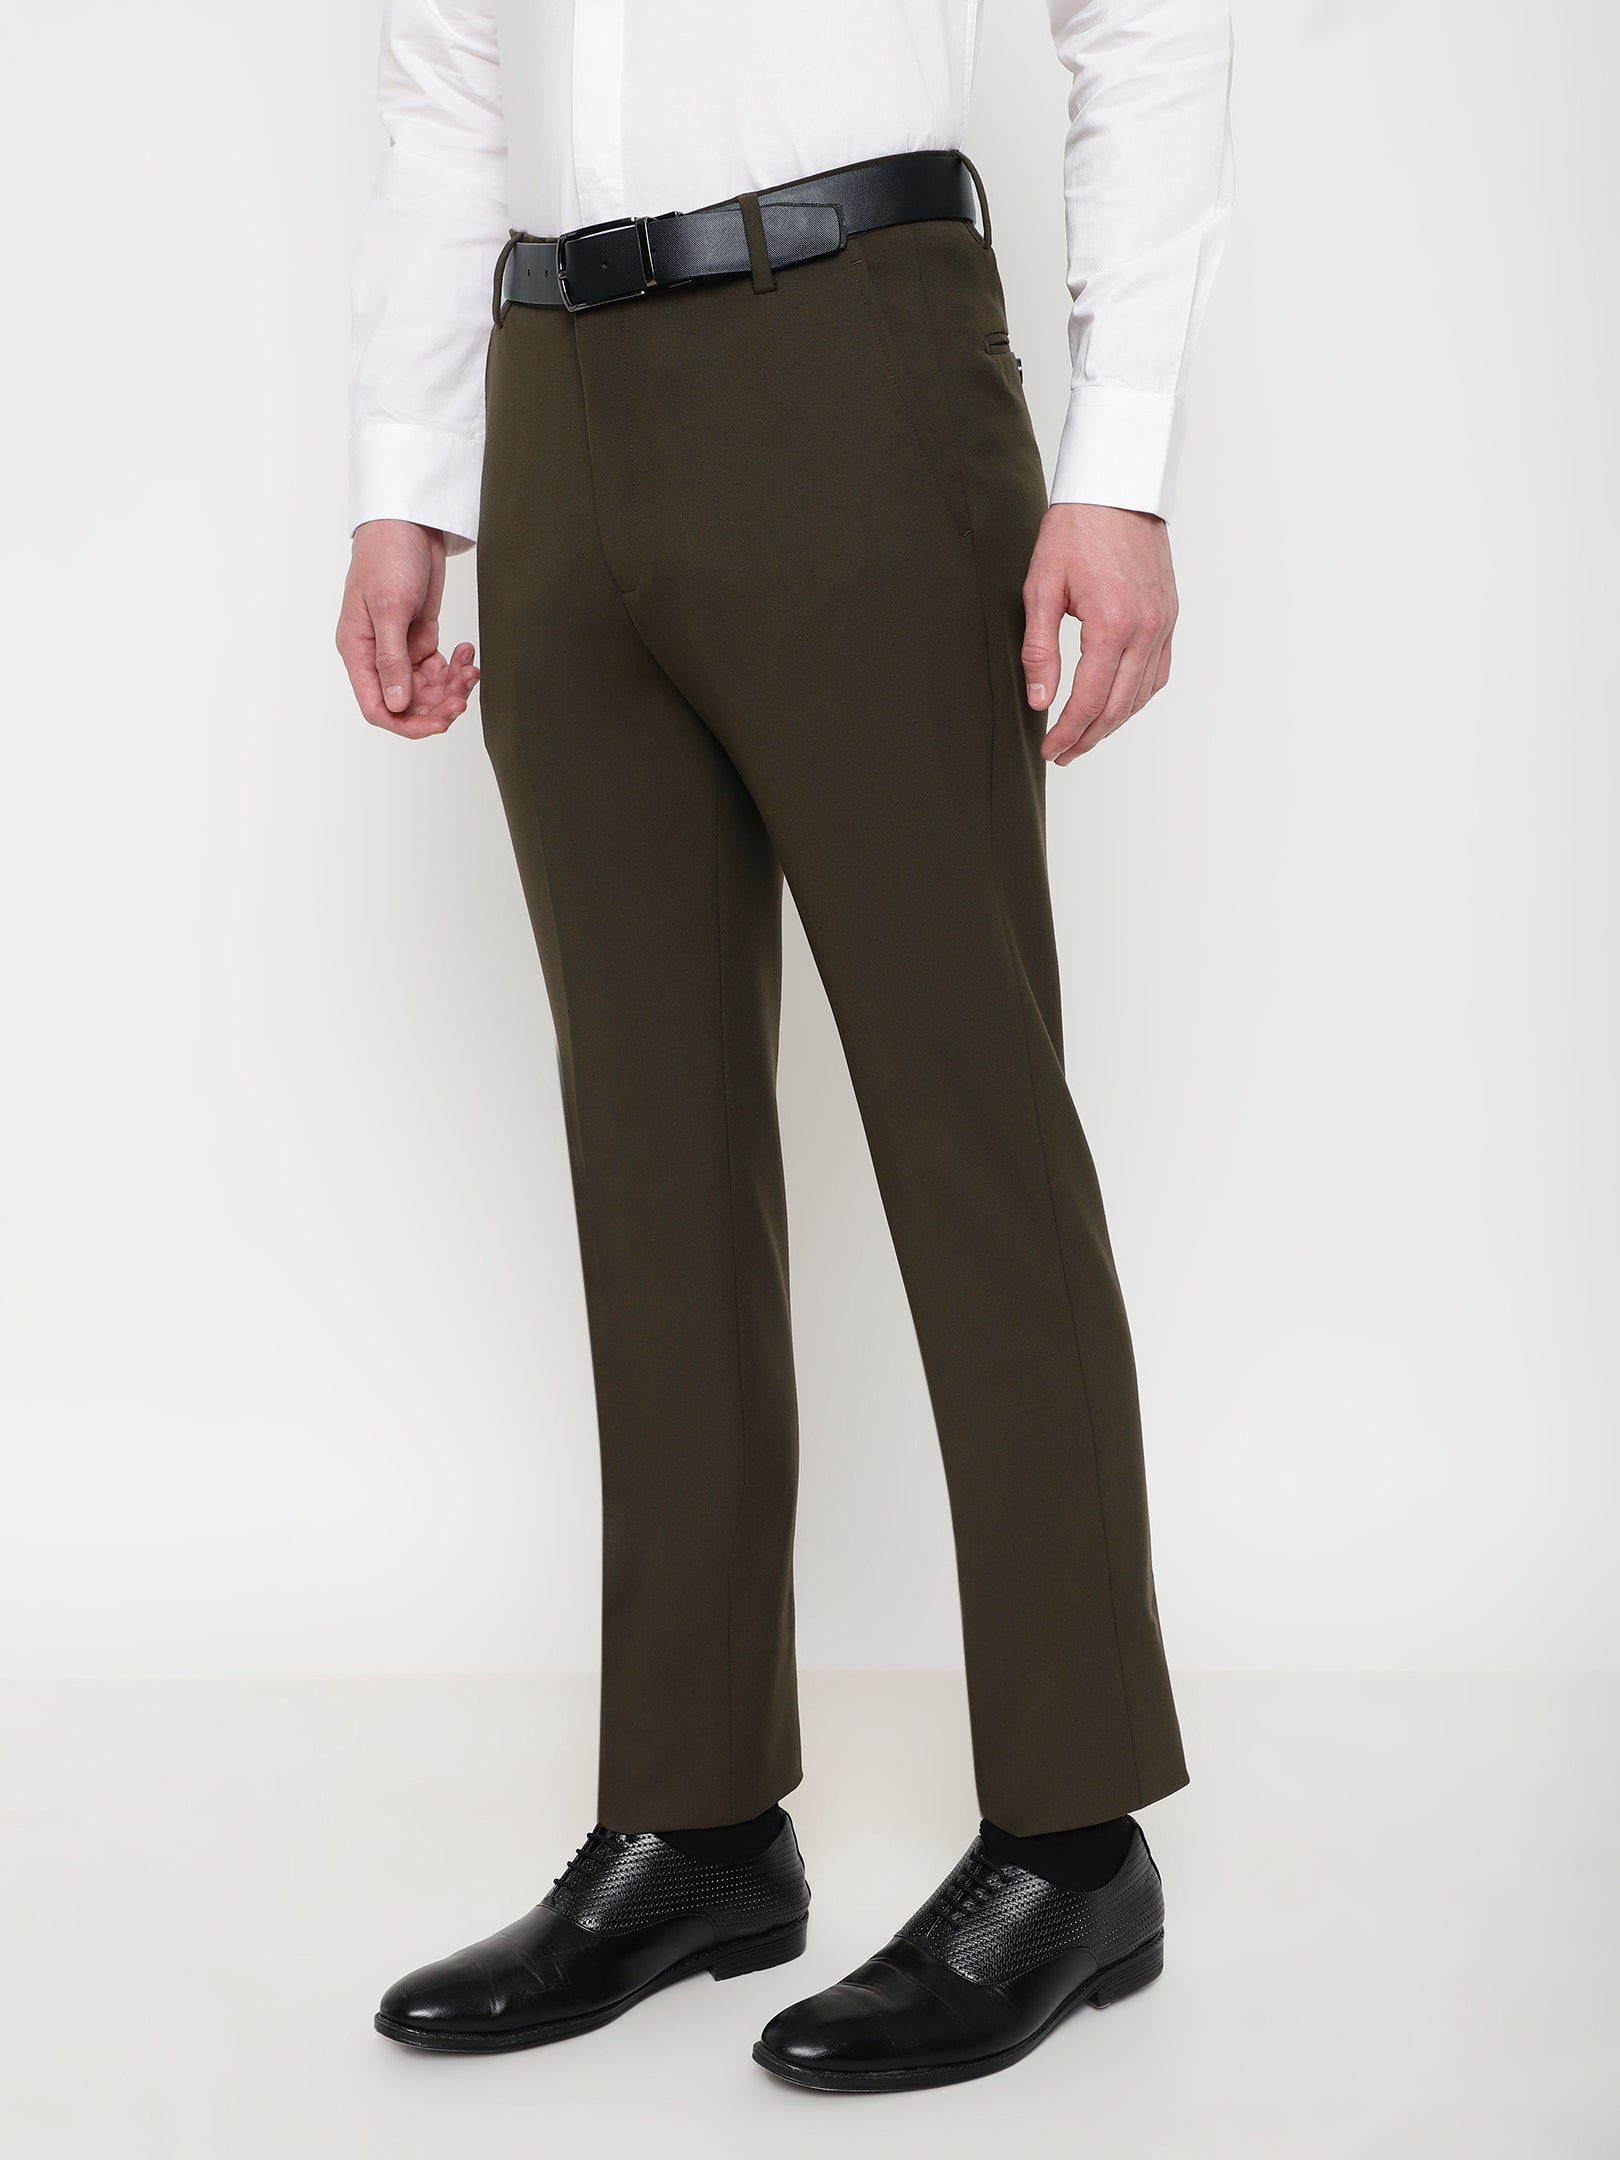 Wehilion Men's Premium Slim Fit Dress Suit Pants Slacks Tight Suit Elastic Formal  Trousers,Nattier Blue,XL - Walmart.com